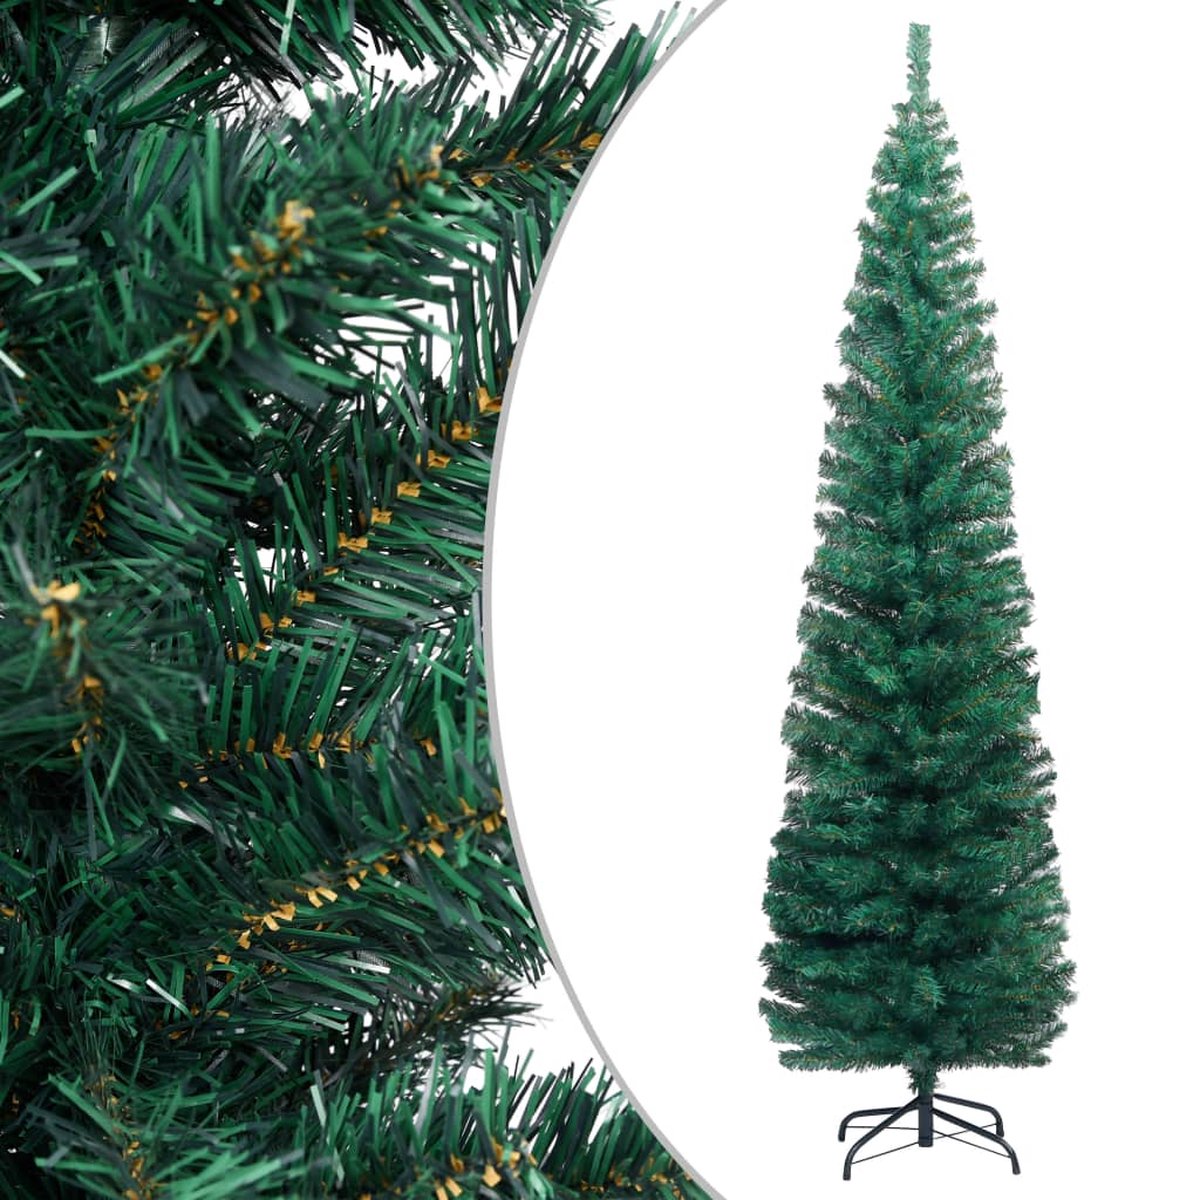 VidaLife Kunstkerstboom met standaard smal 210 cm PVC groen